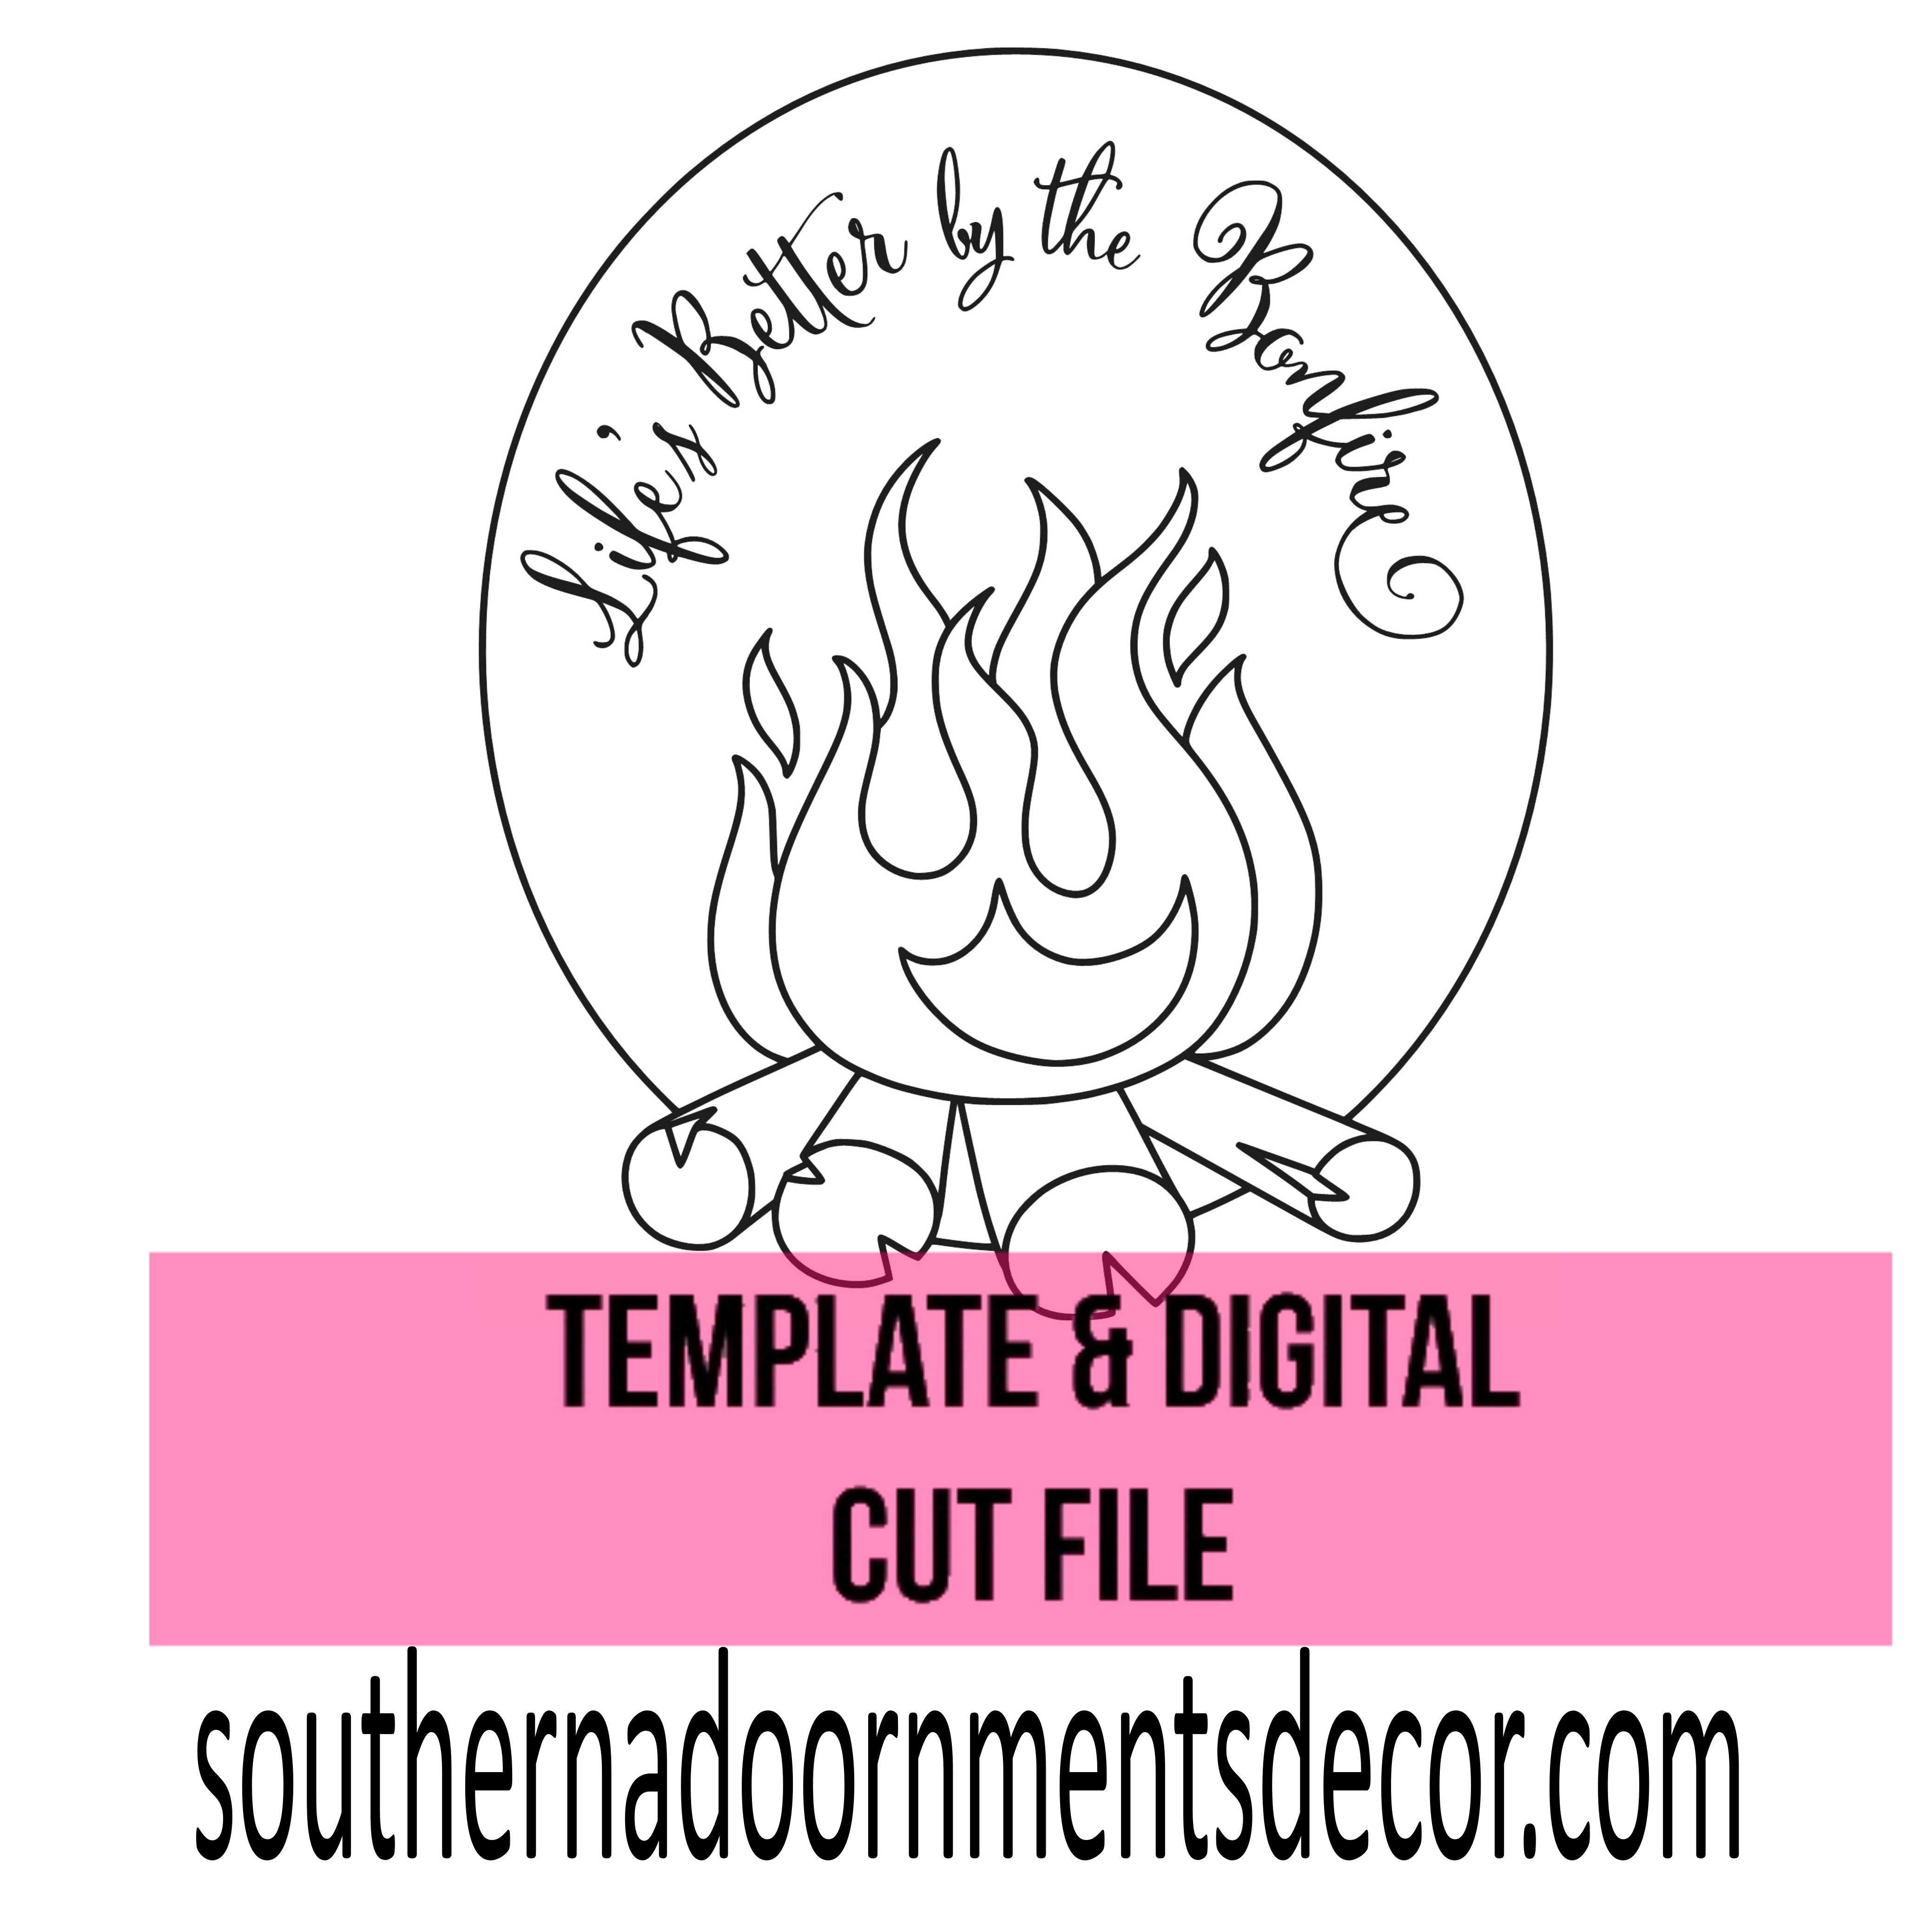 Bonfire Template & Digital Cut File